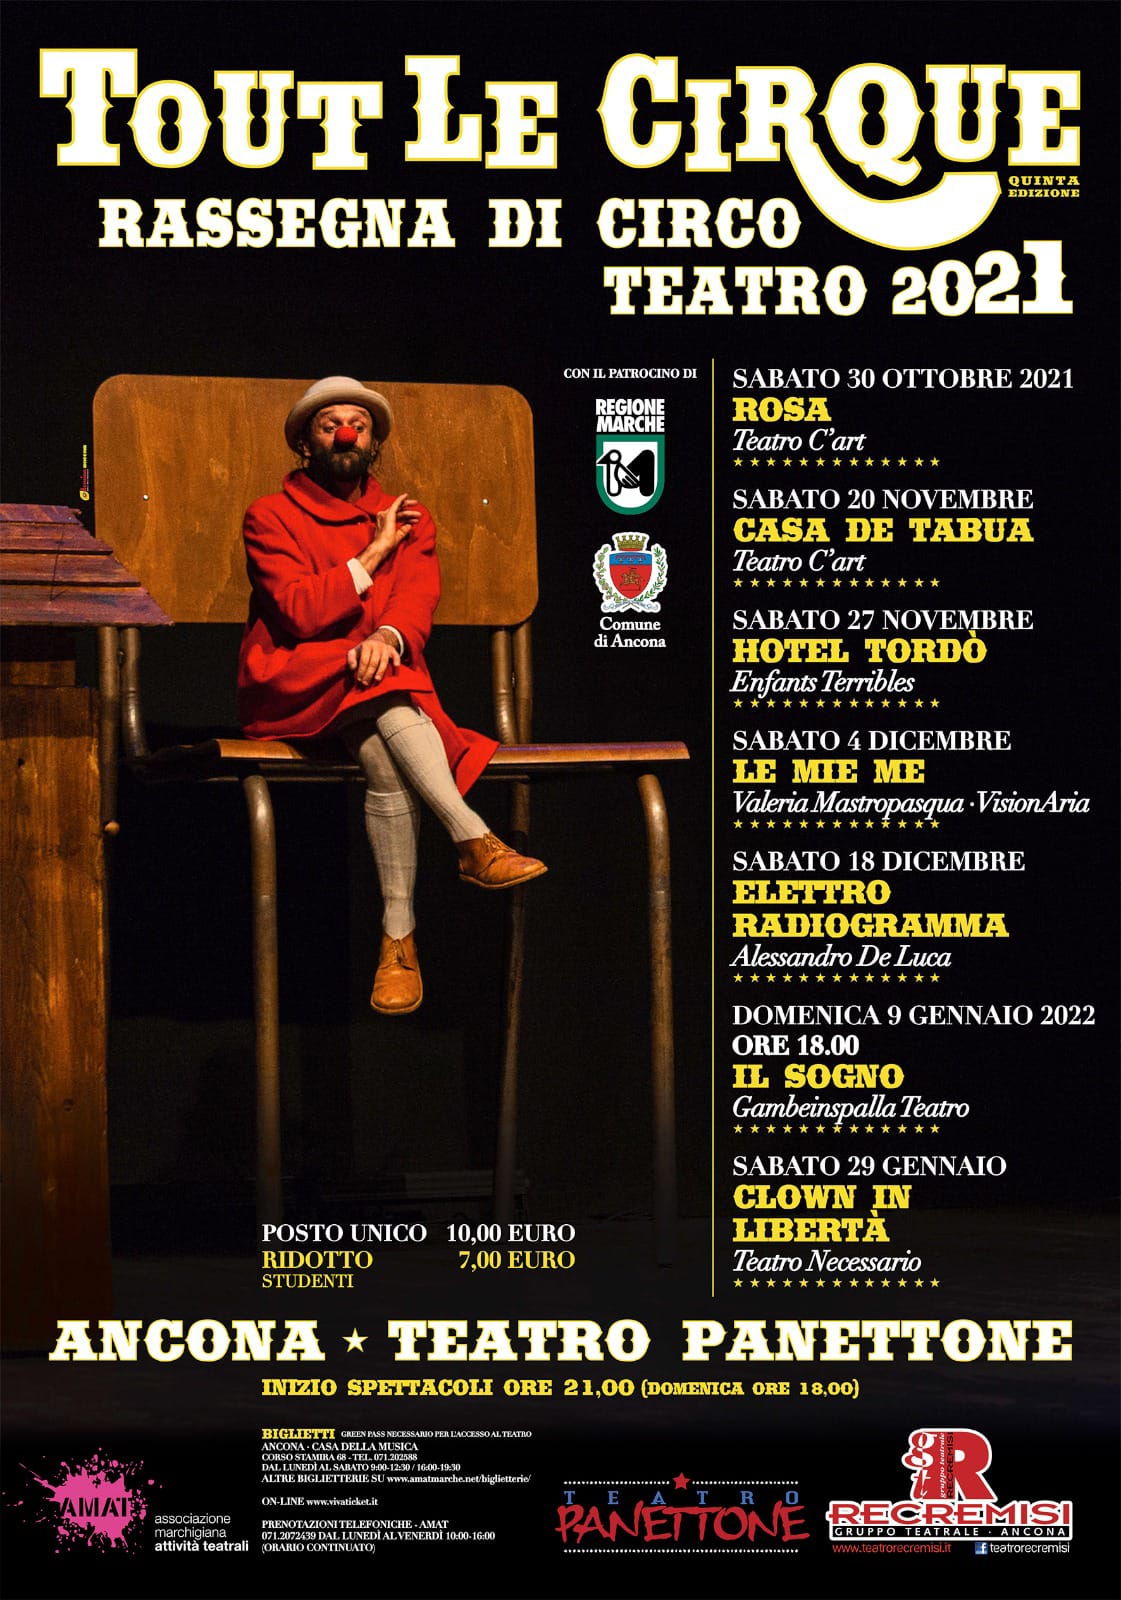 Tout Le CirQue 2021 - Rassegna di Circo Teatro